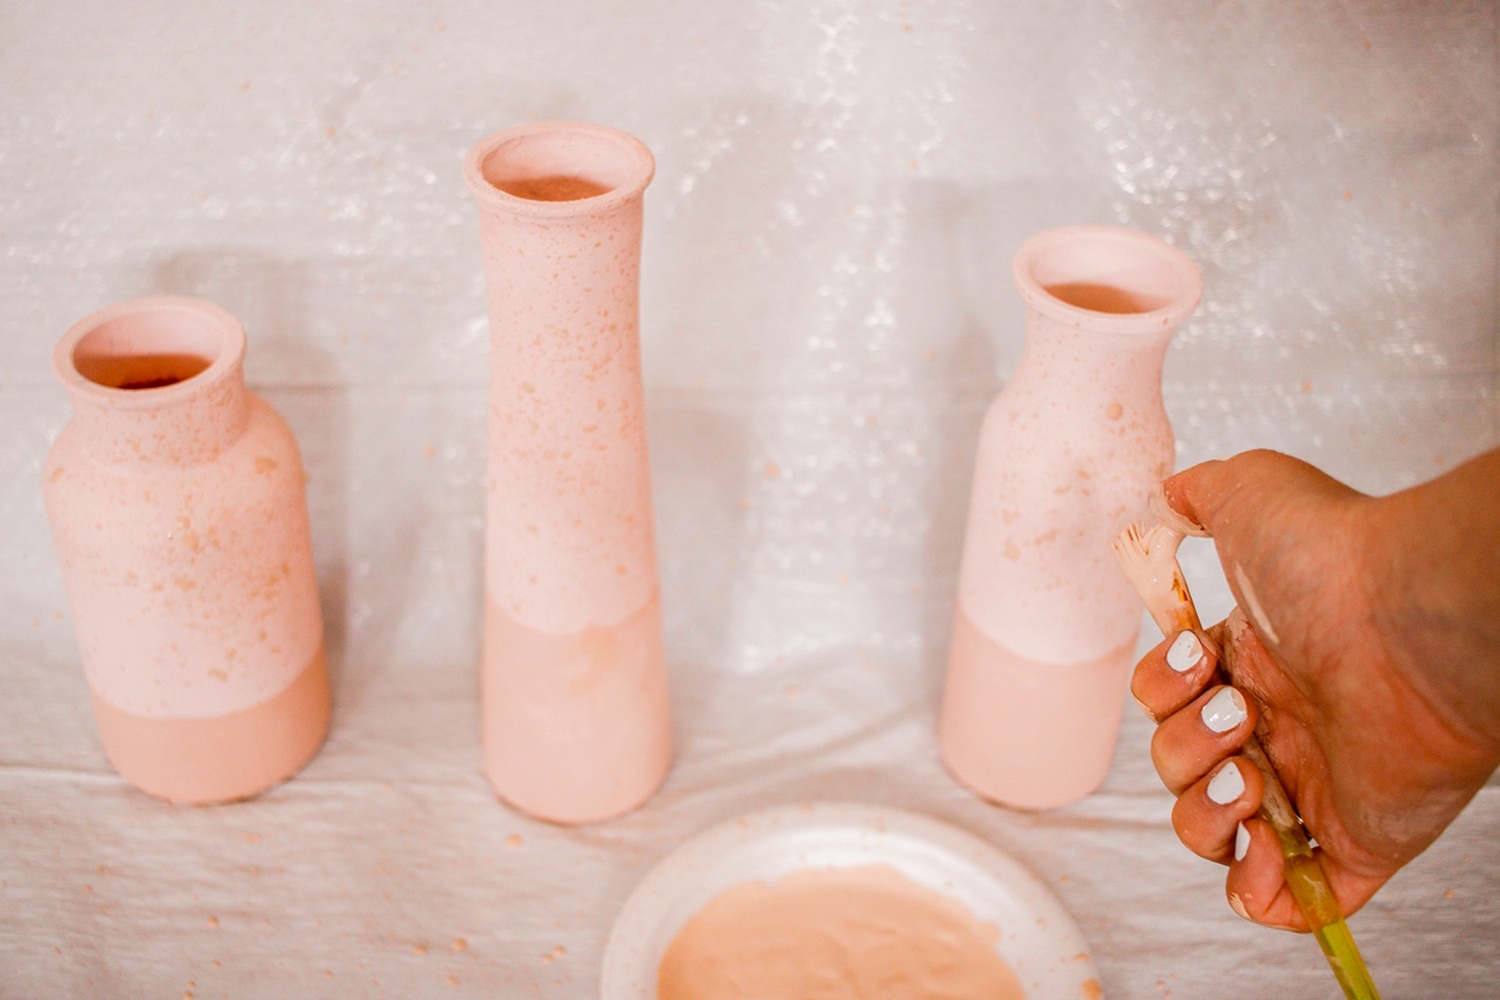 Splatter watered down paint onto vases